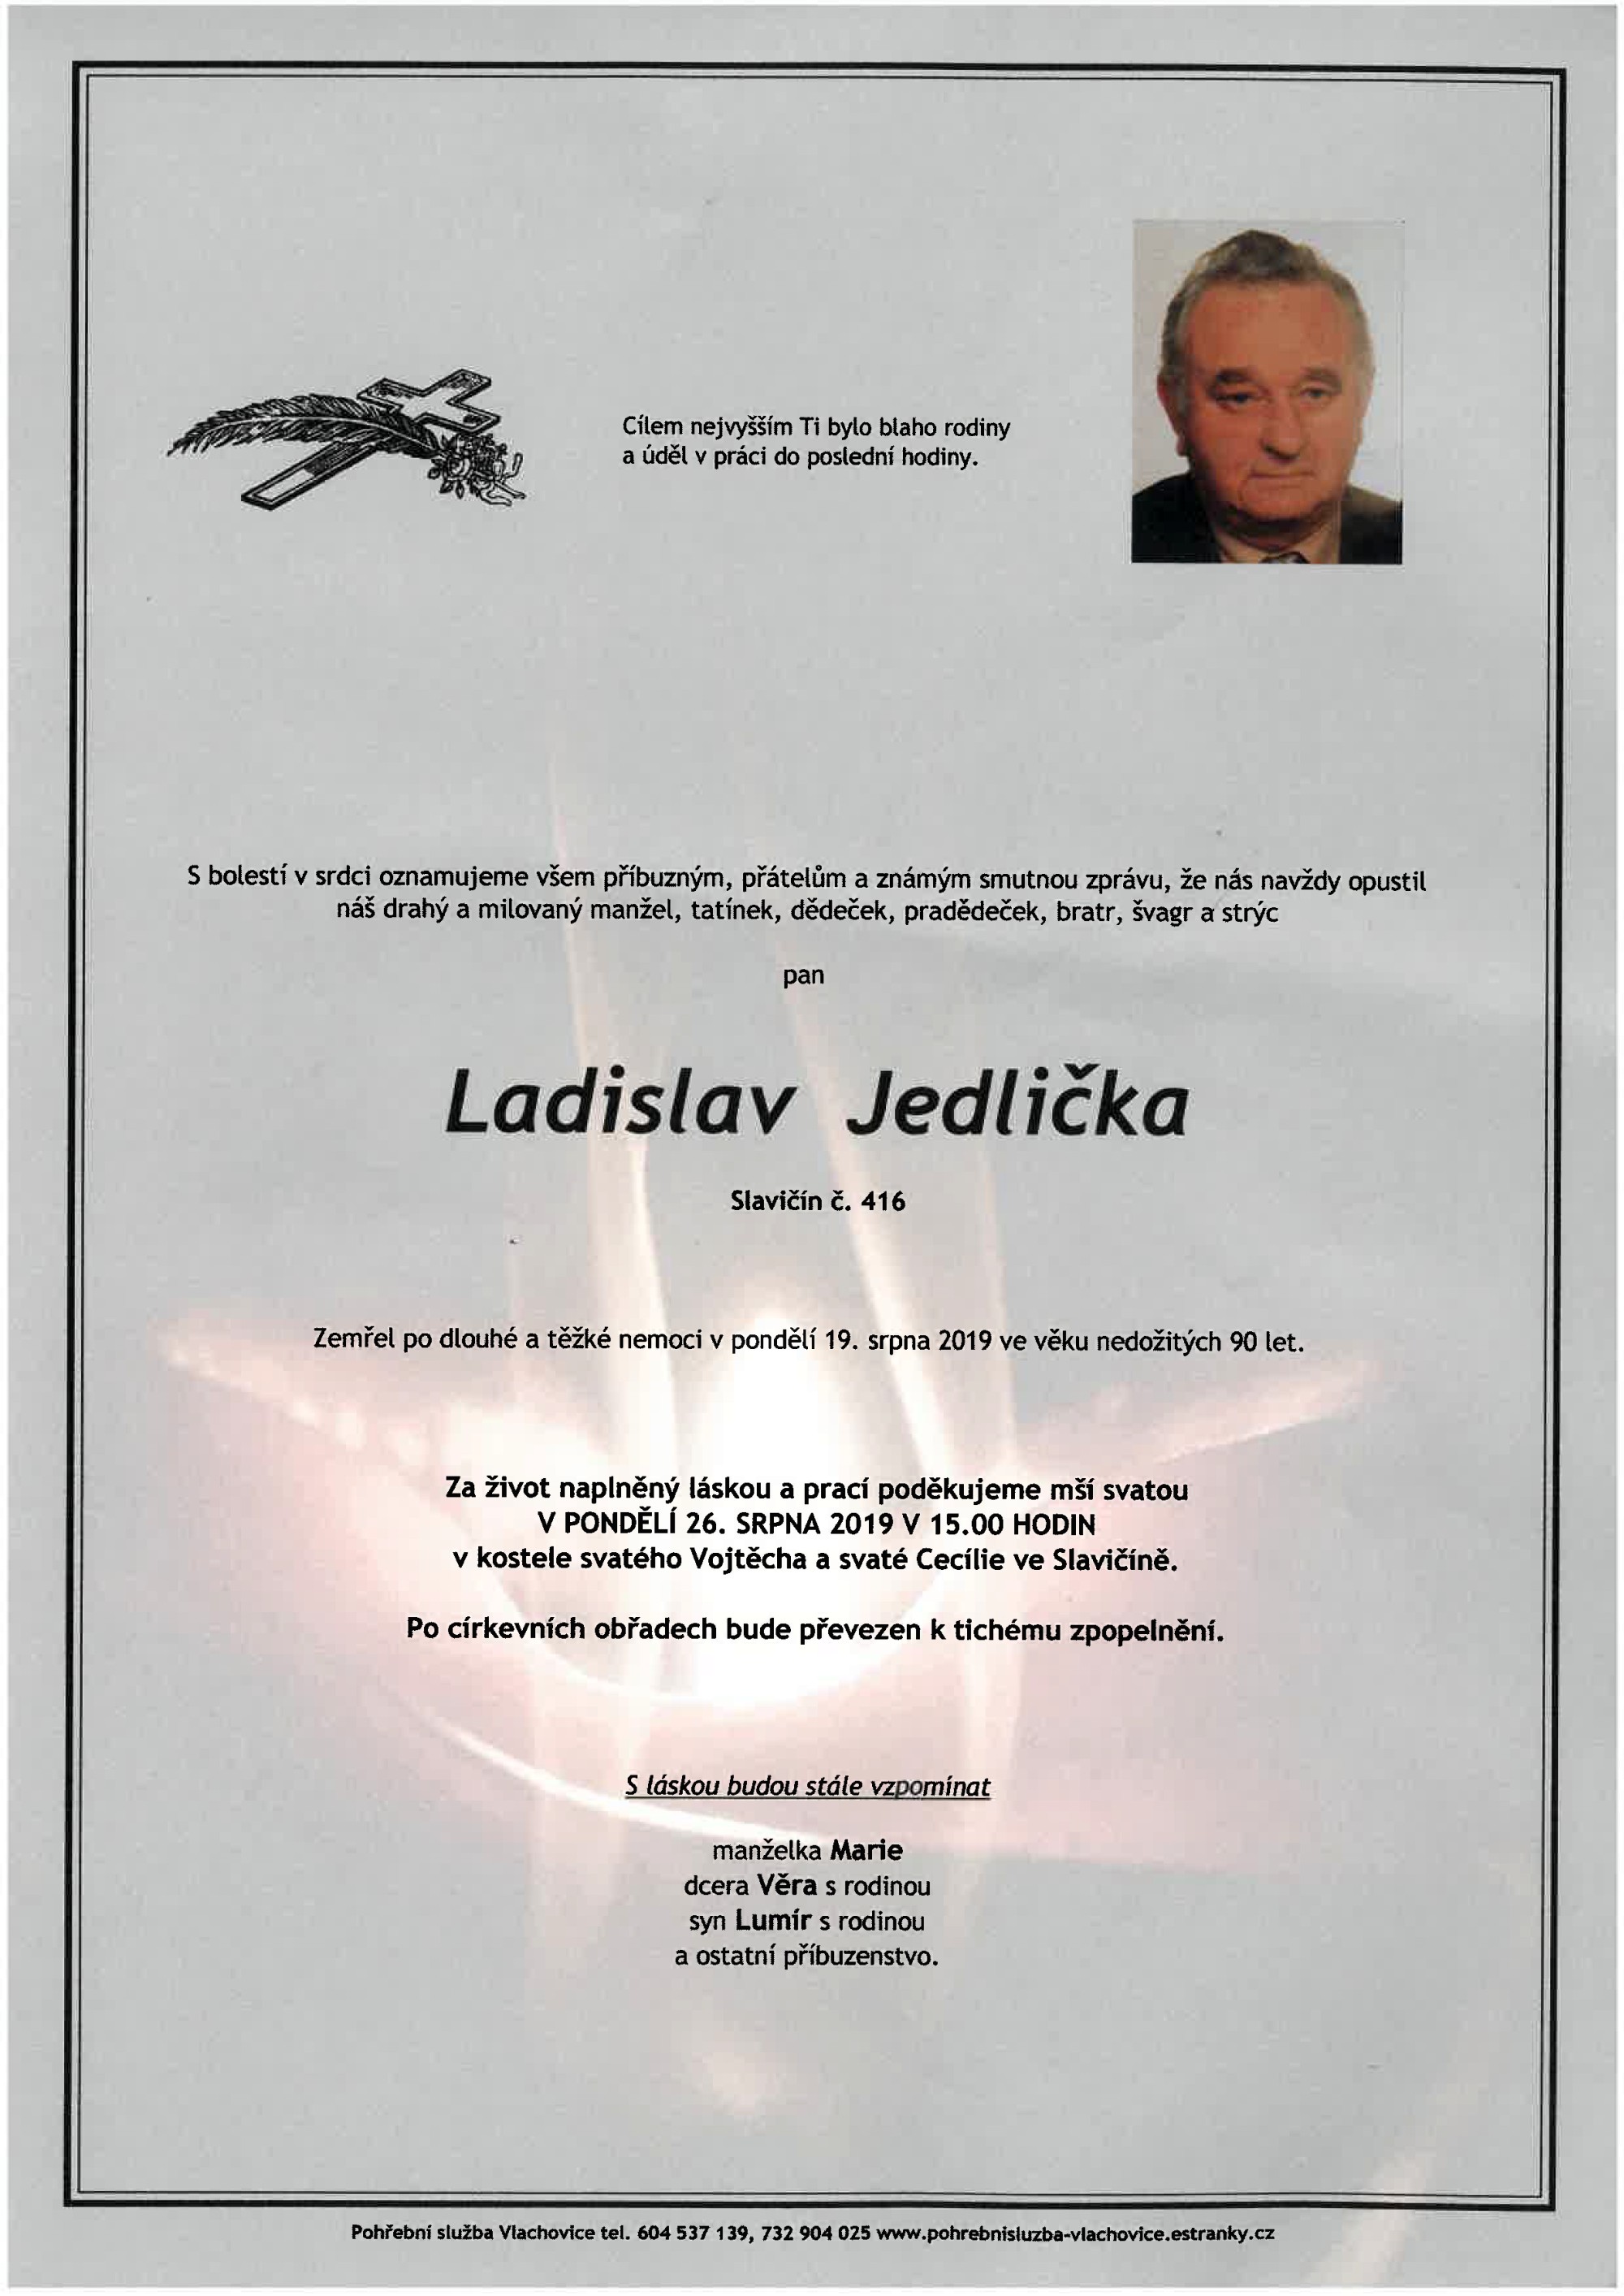 Ladislav Jedlička